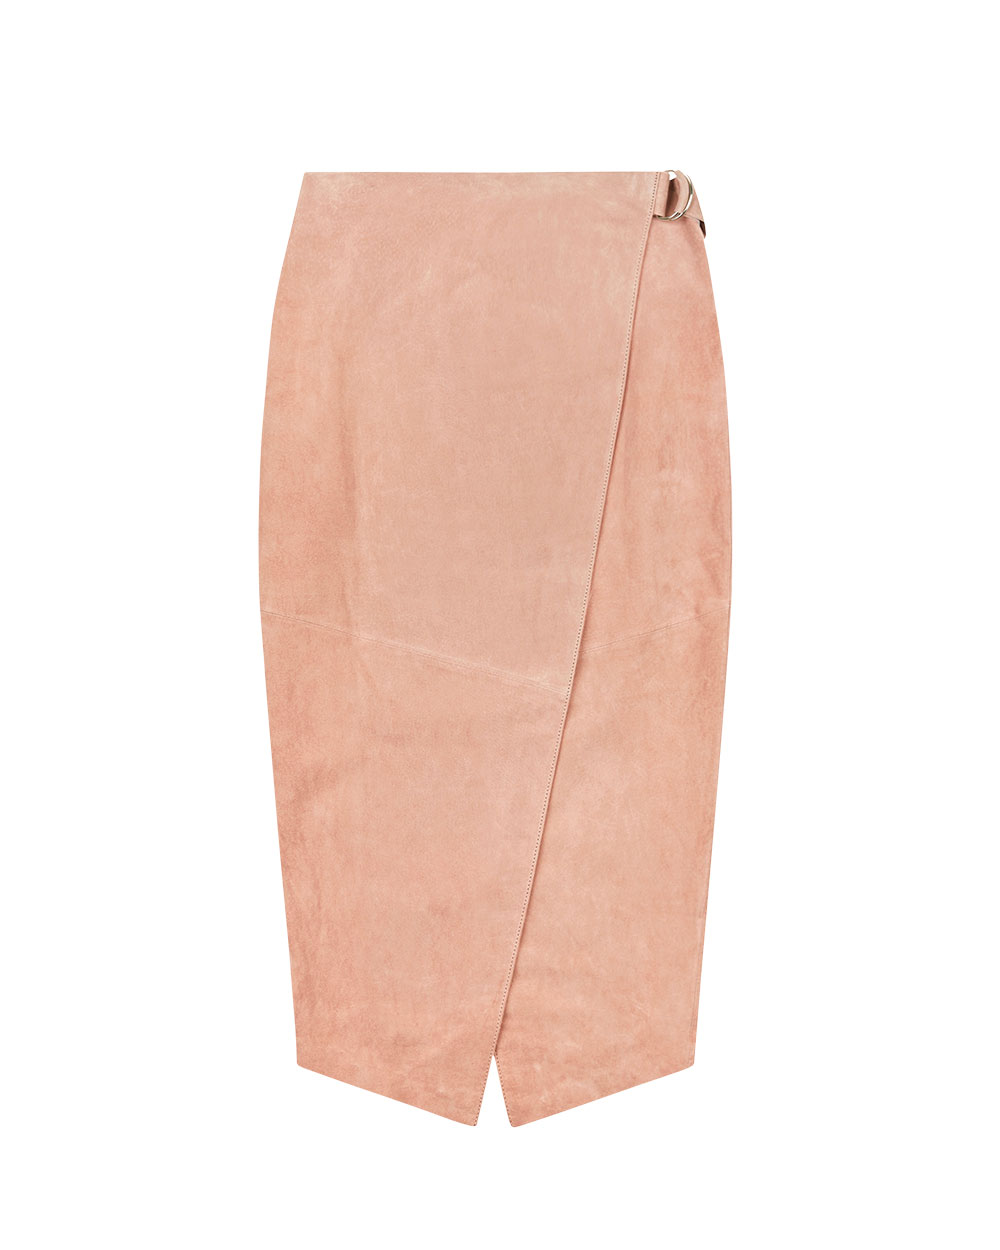 ASOS skirt, $144